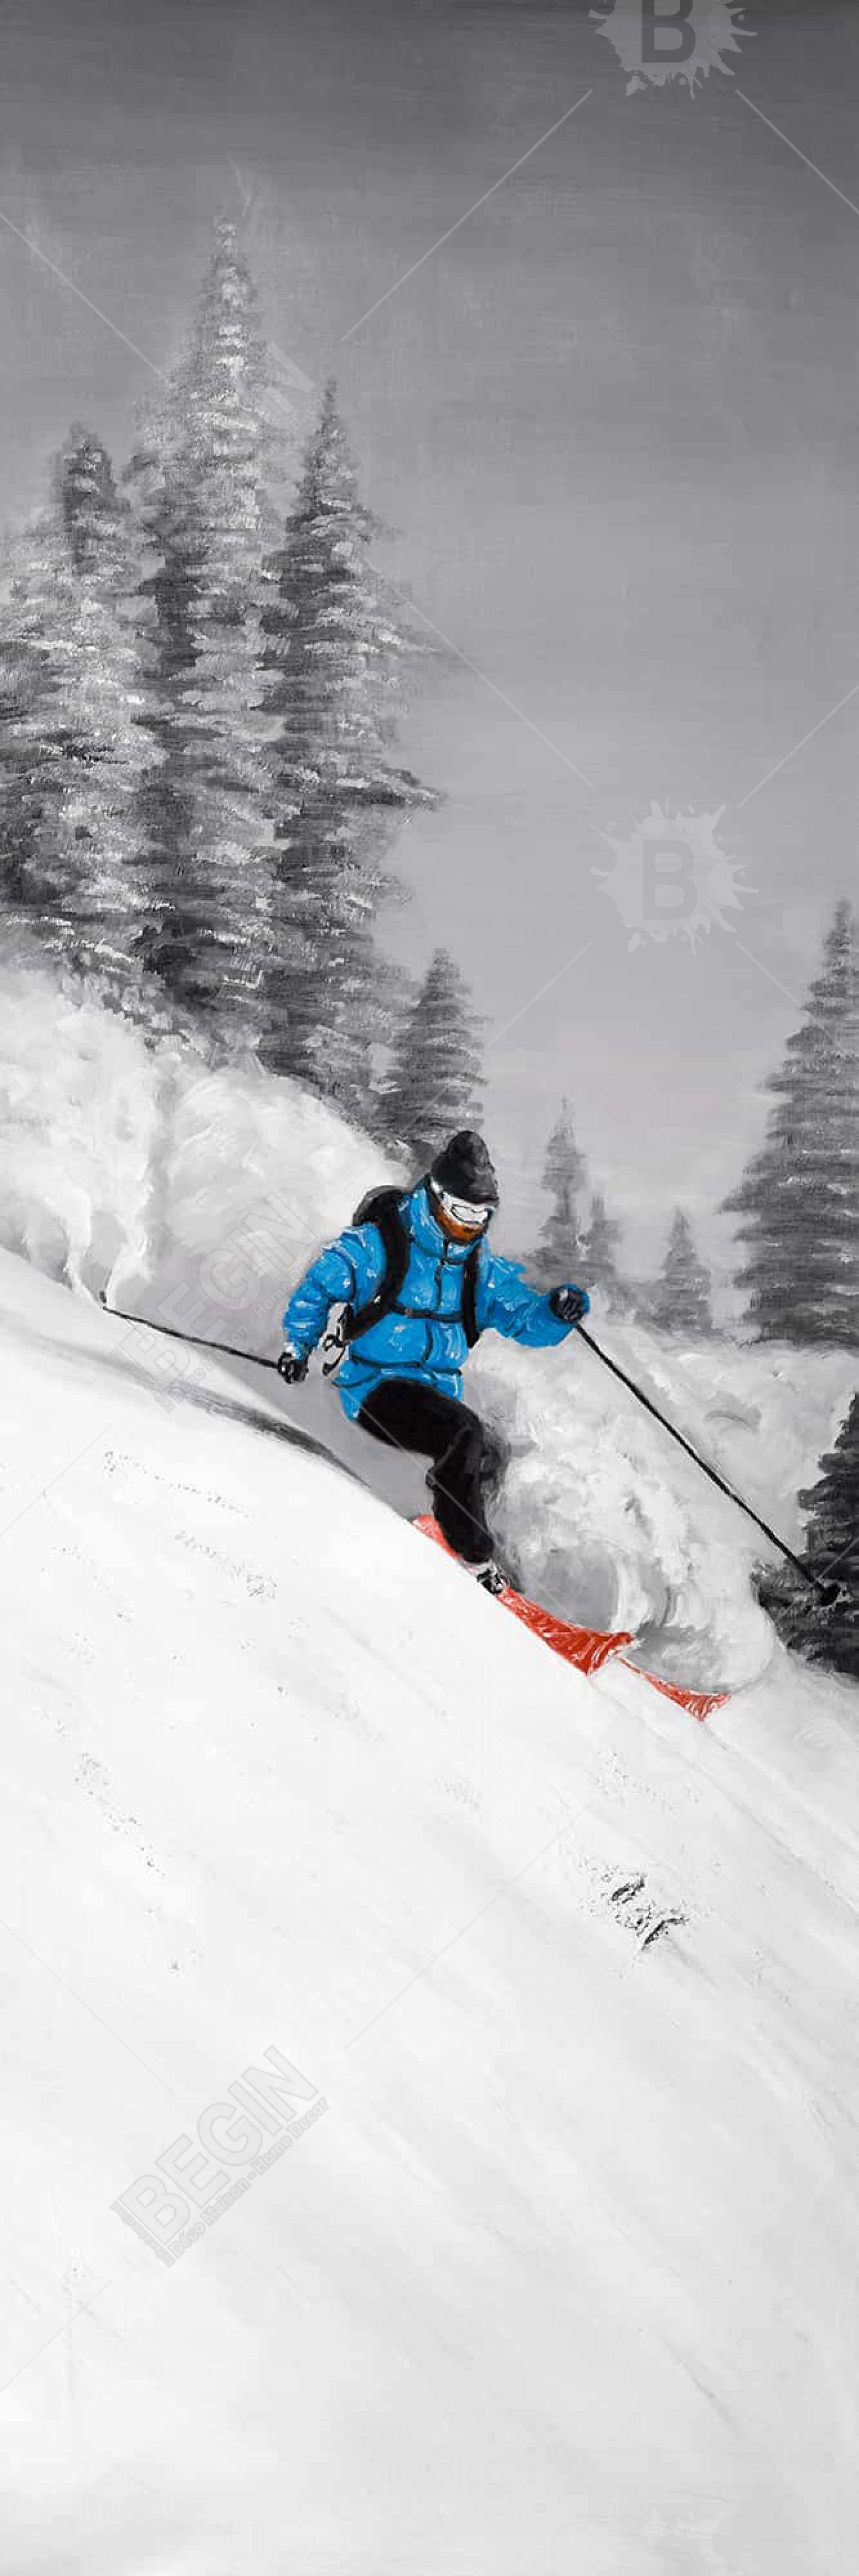 Man skiing in mountain